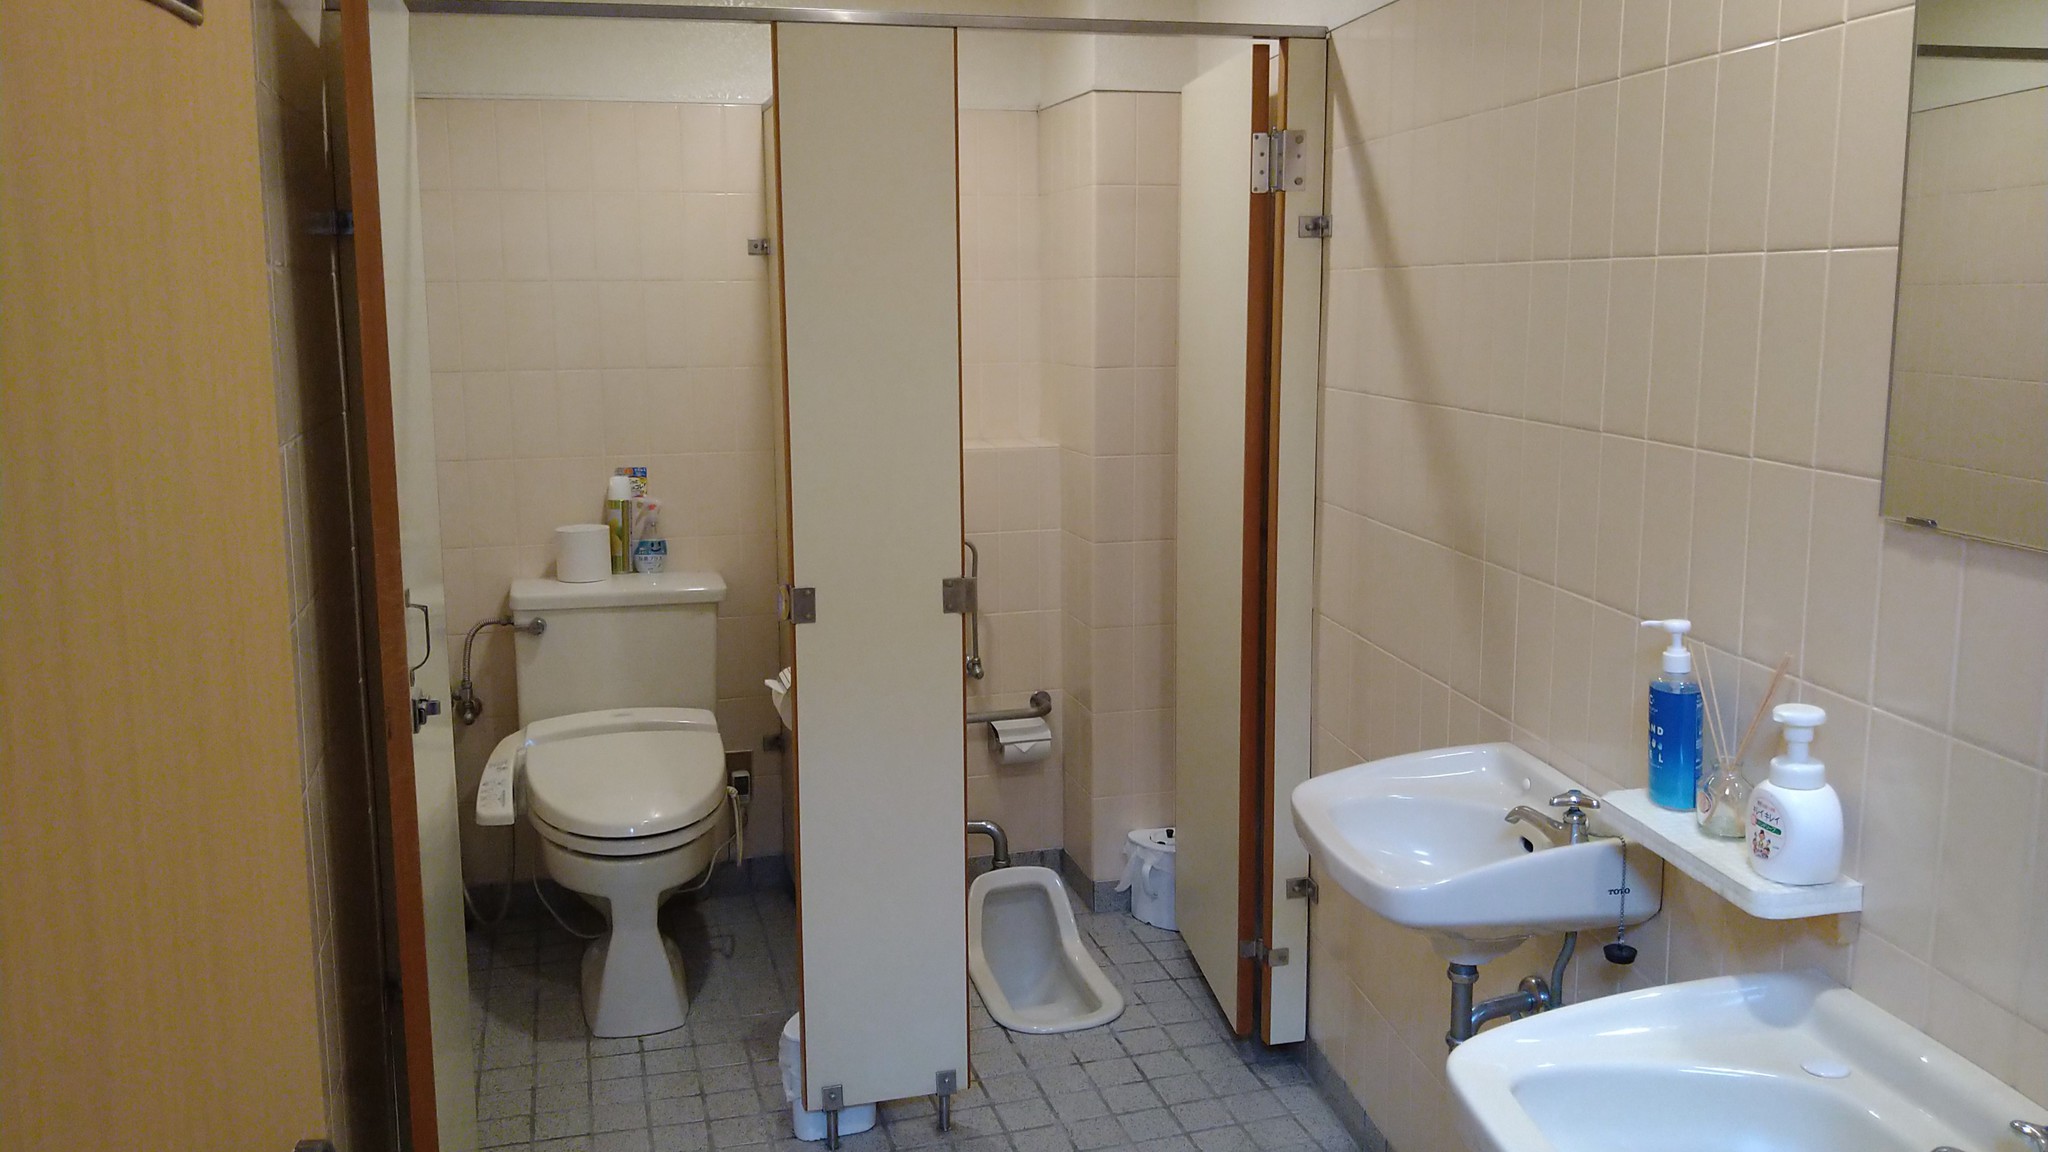 トイレが付いてないお部屋には各お部屋専用のウォシュレット付きトイレをご用意してます。